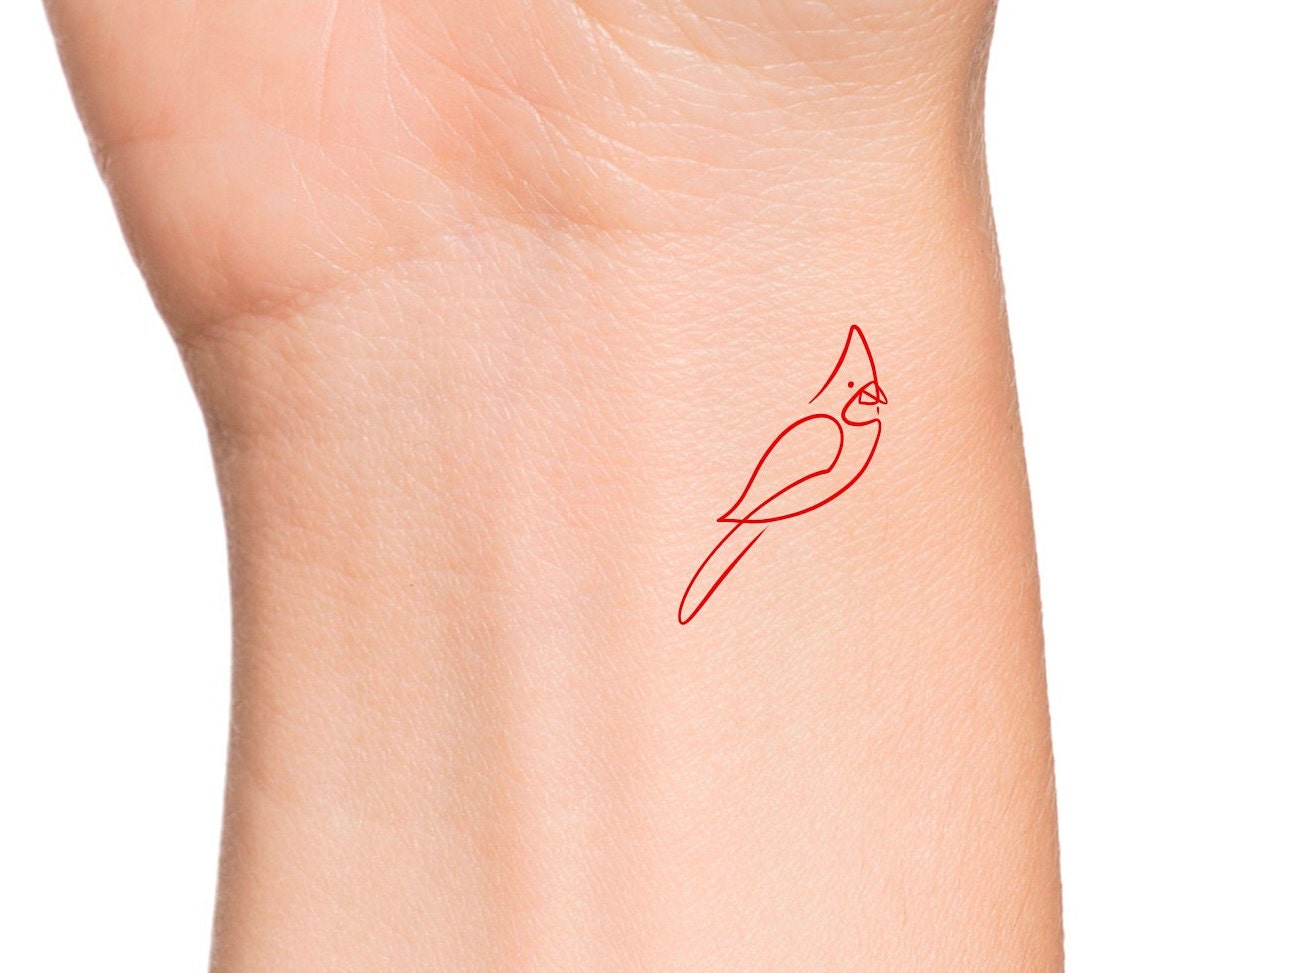 40 Tiny Bird Tattoo Ideas To Admire  Bored Art  Cardinal tattoos Tiny bird  tattoos Red bird tattoos